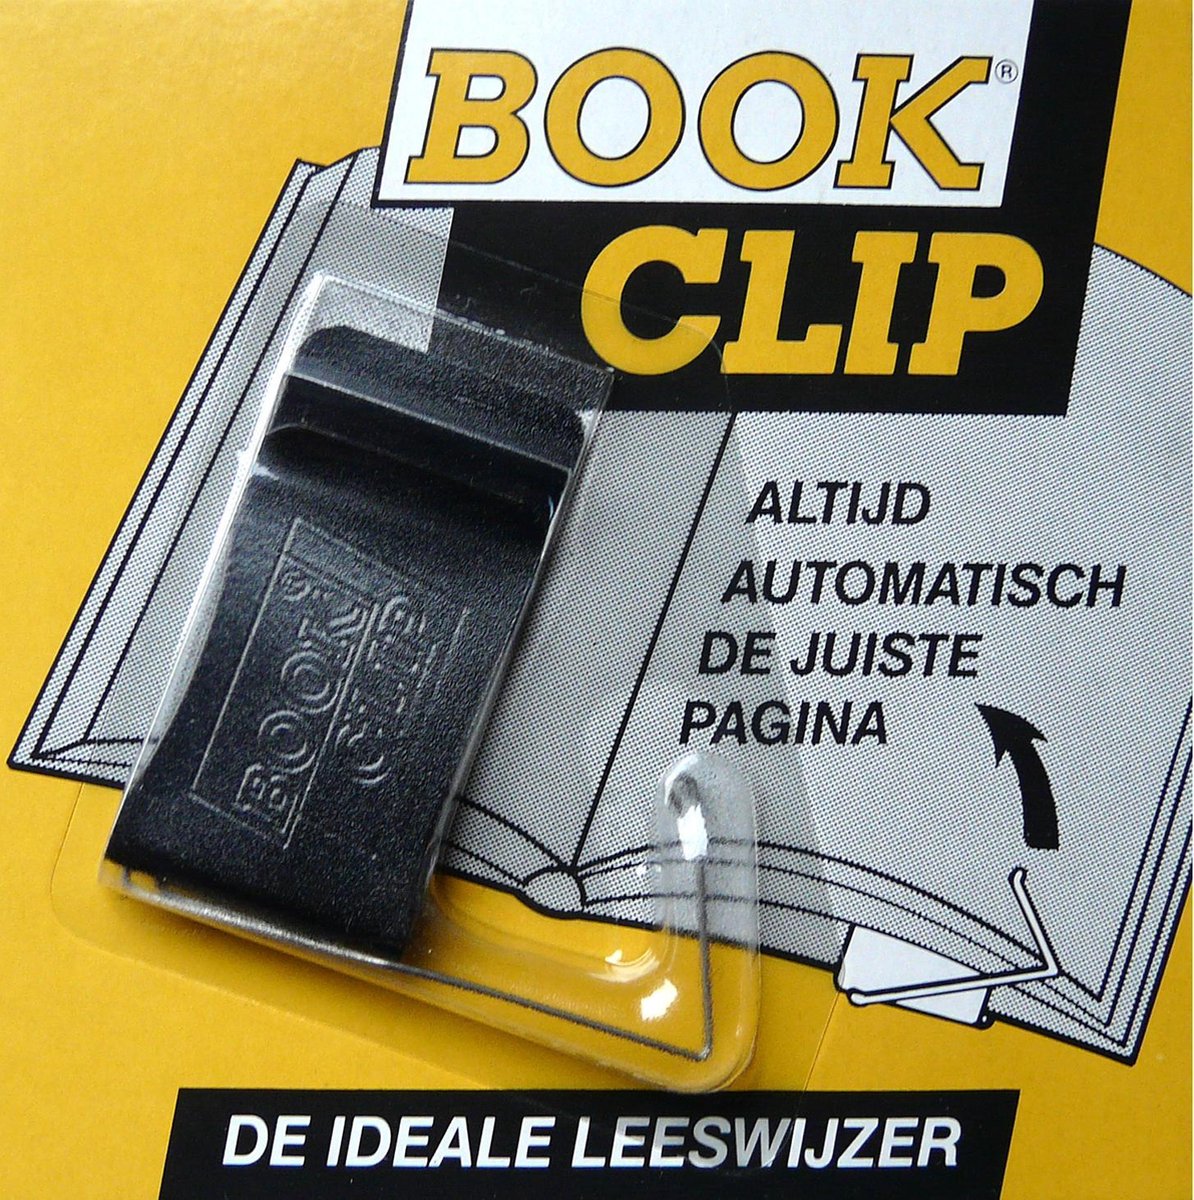 BookClip - handige slimme boekenlegger - blijft vanzelf op de juiste bladzijde